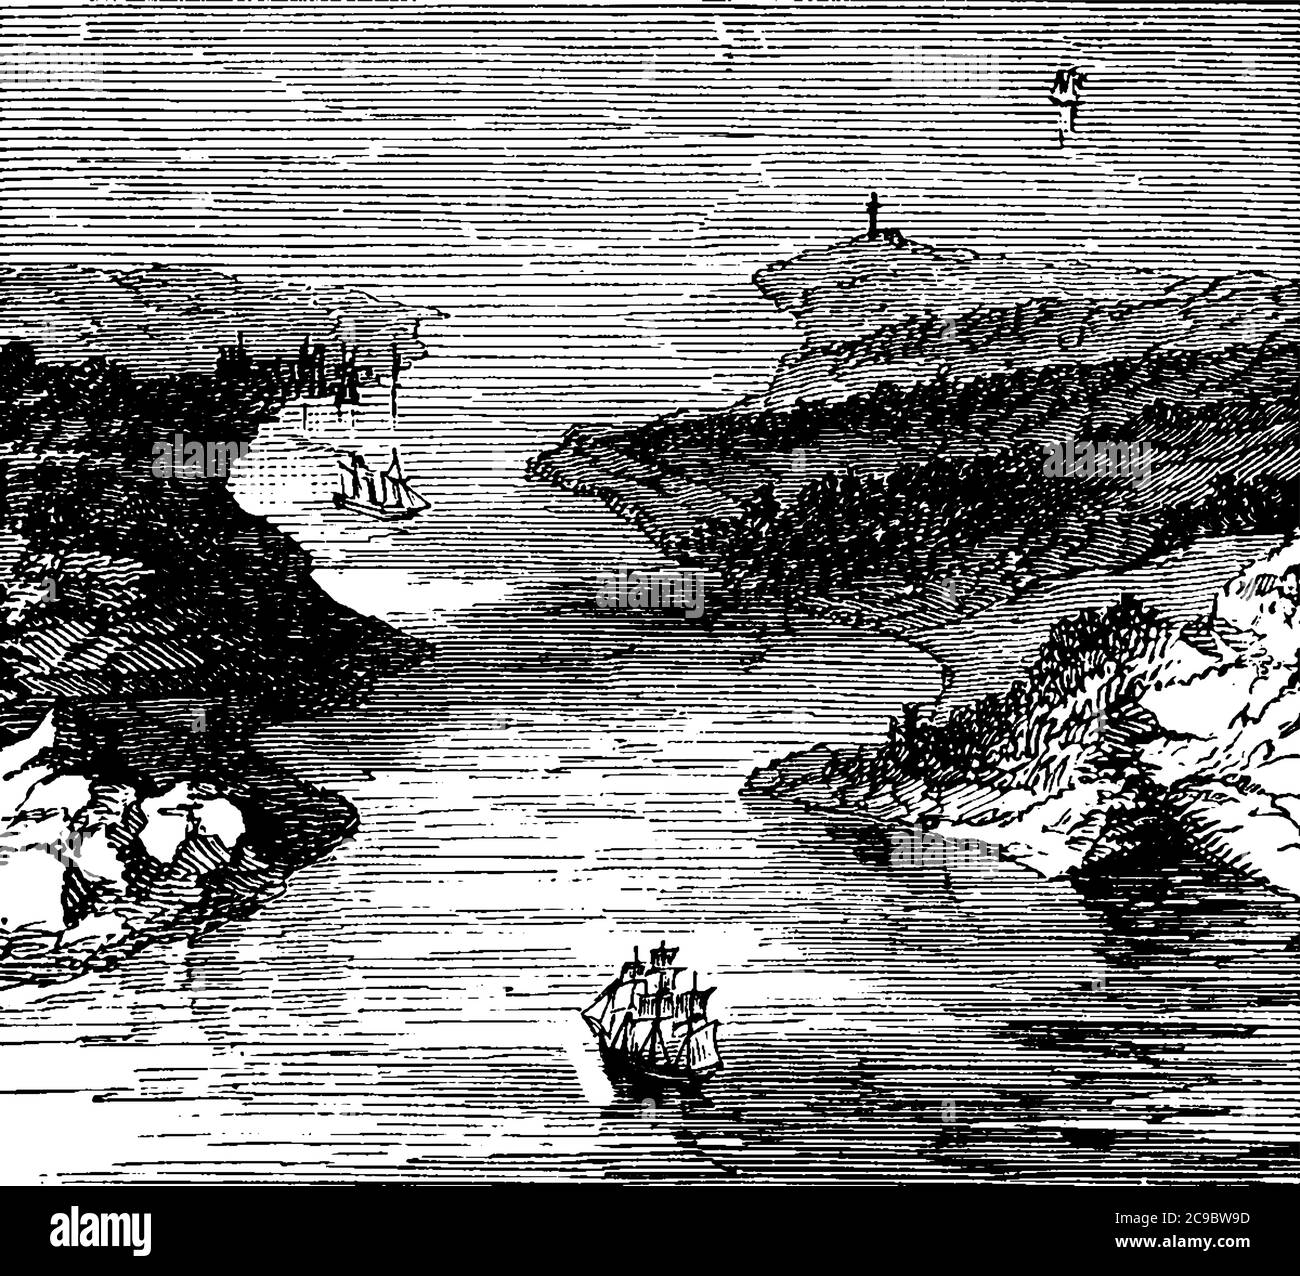 Image d'un droit avec des bateaux passant par lui, dessin de ligne vintage ou illustration de gravure. Illustration de Vecteur